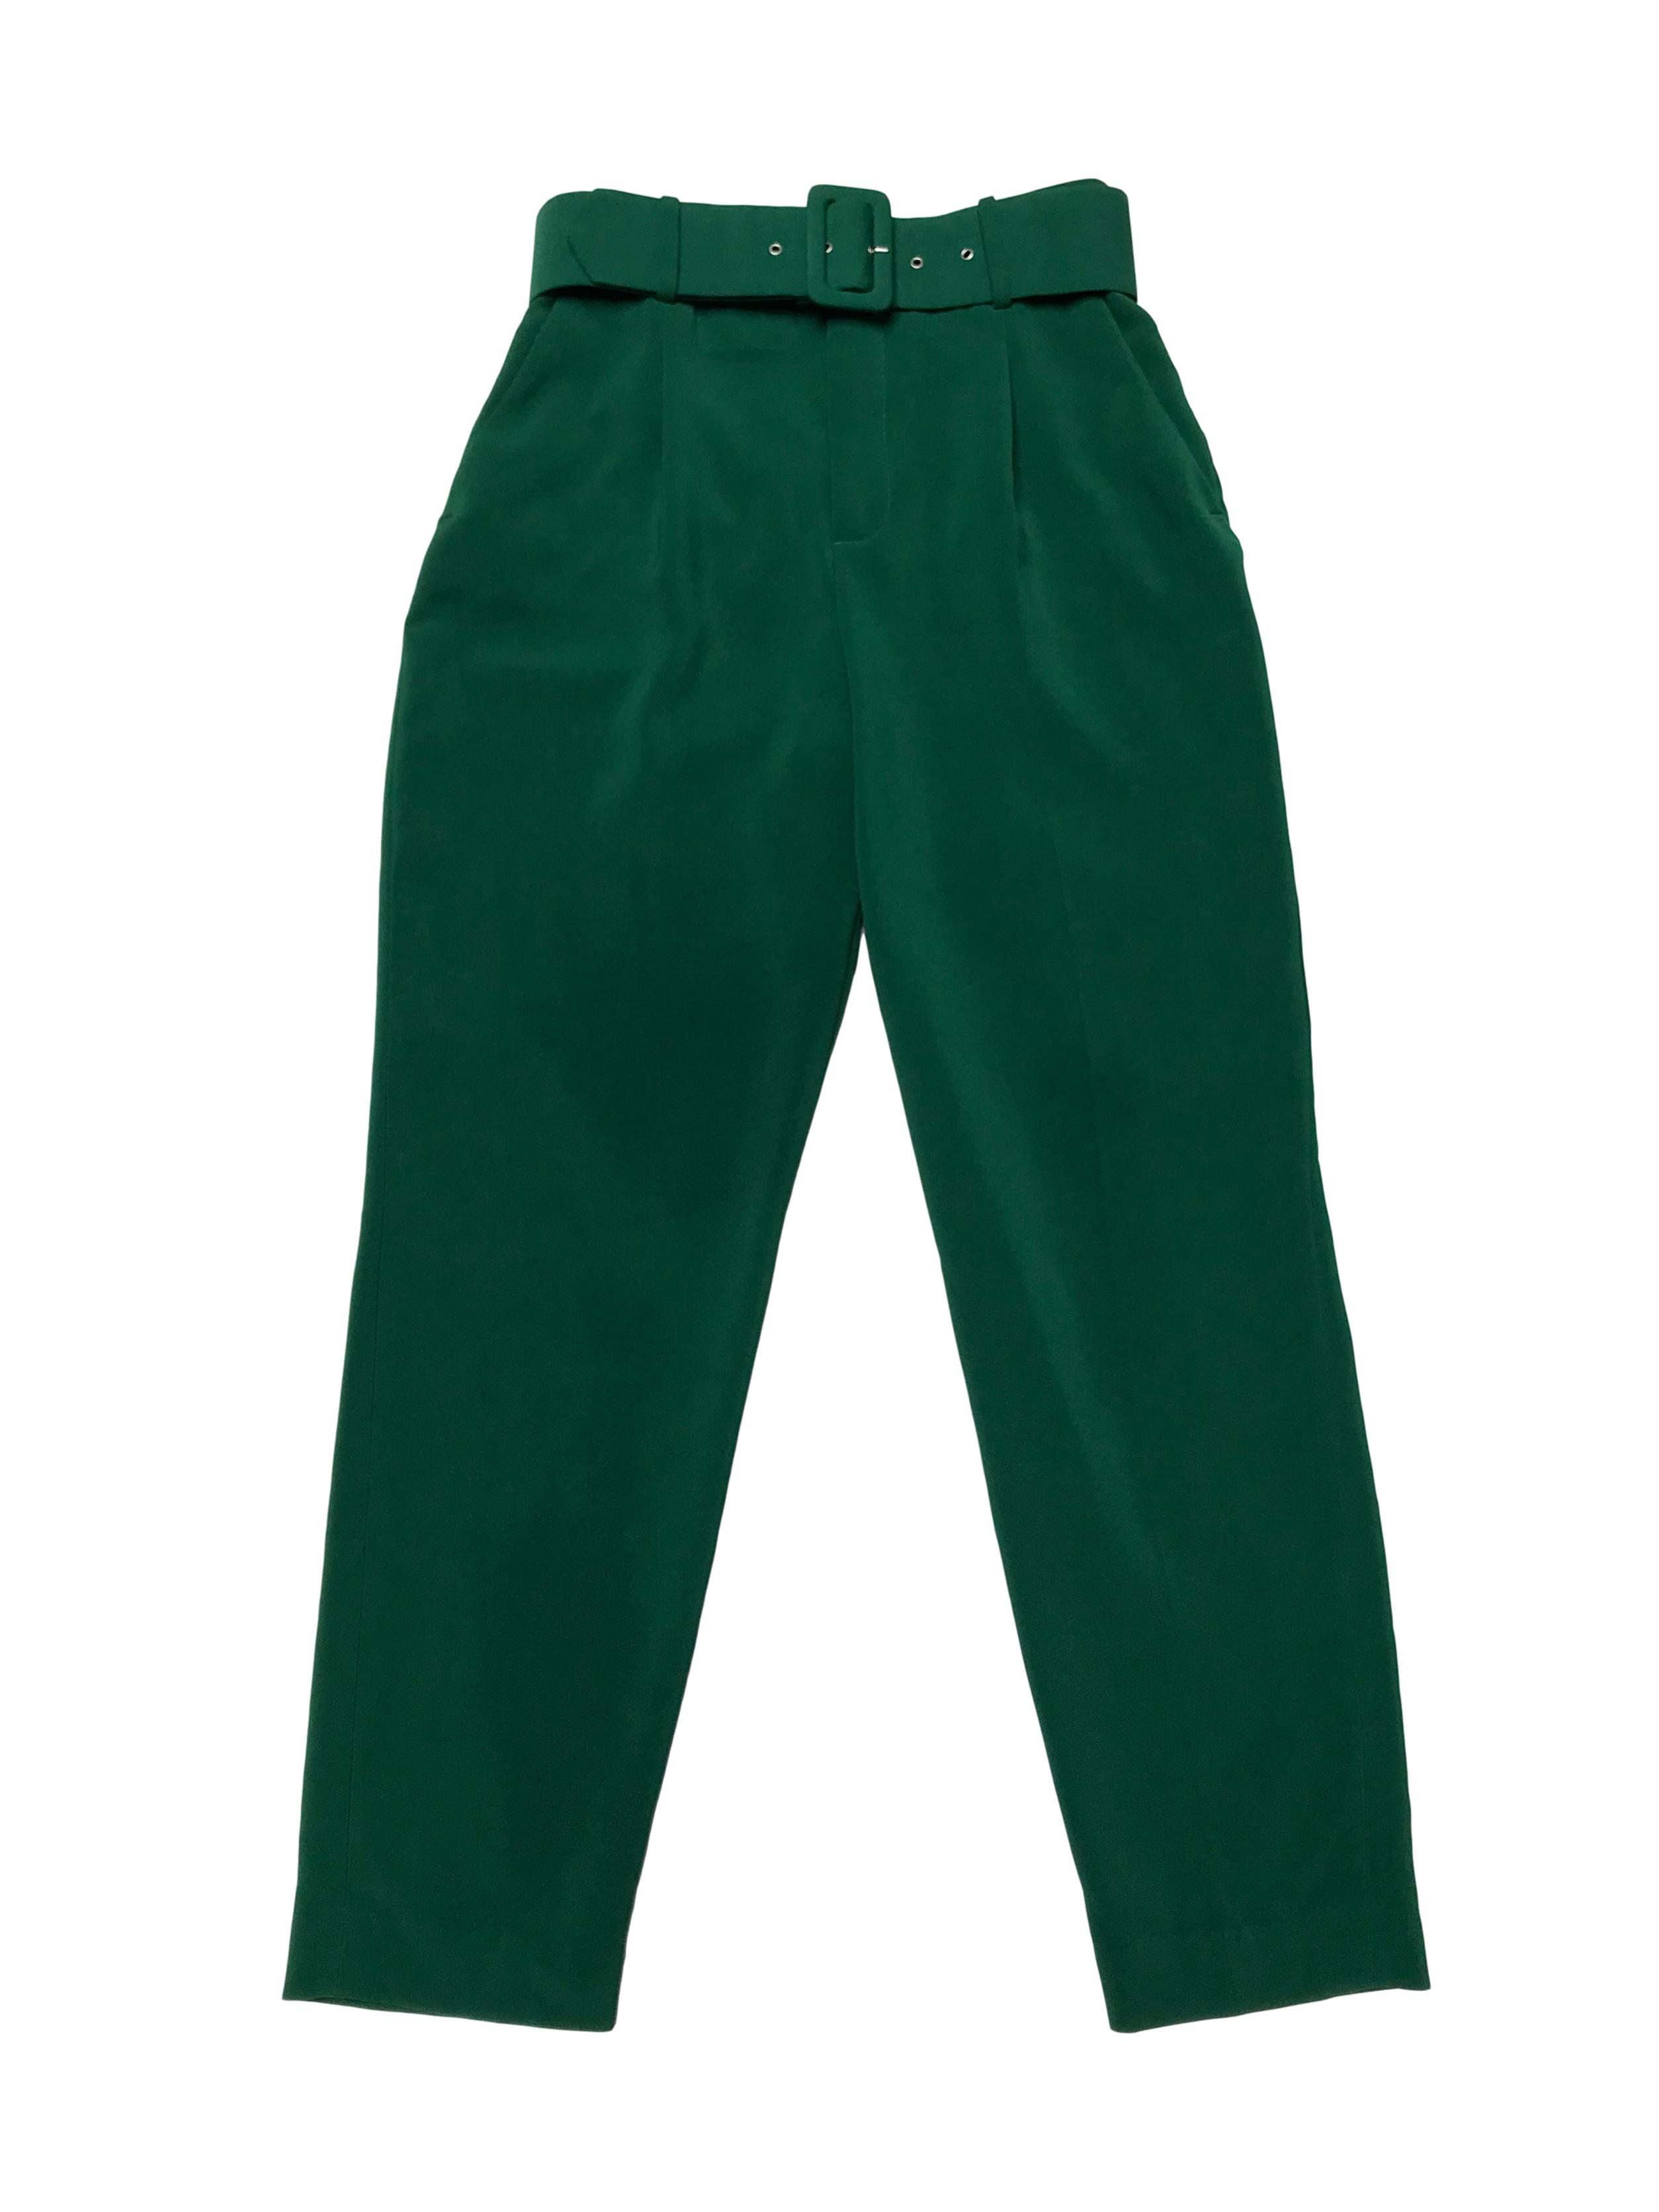 Pantalón Zara a la cintura, con pinzas, bolsillos laterales y correa incorporada (interior de correa con algunos signos de uso). Cintura 70cm